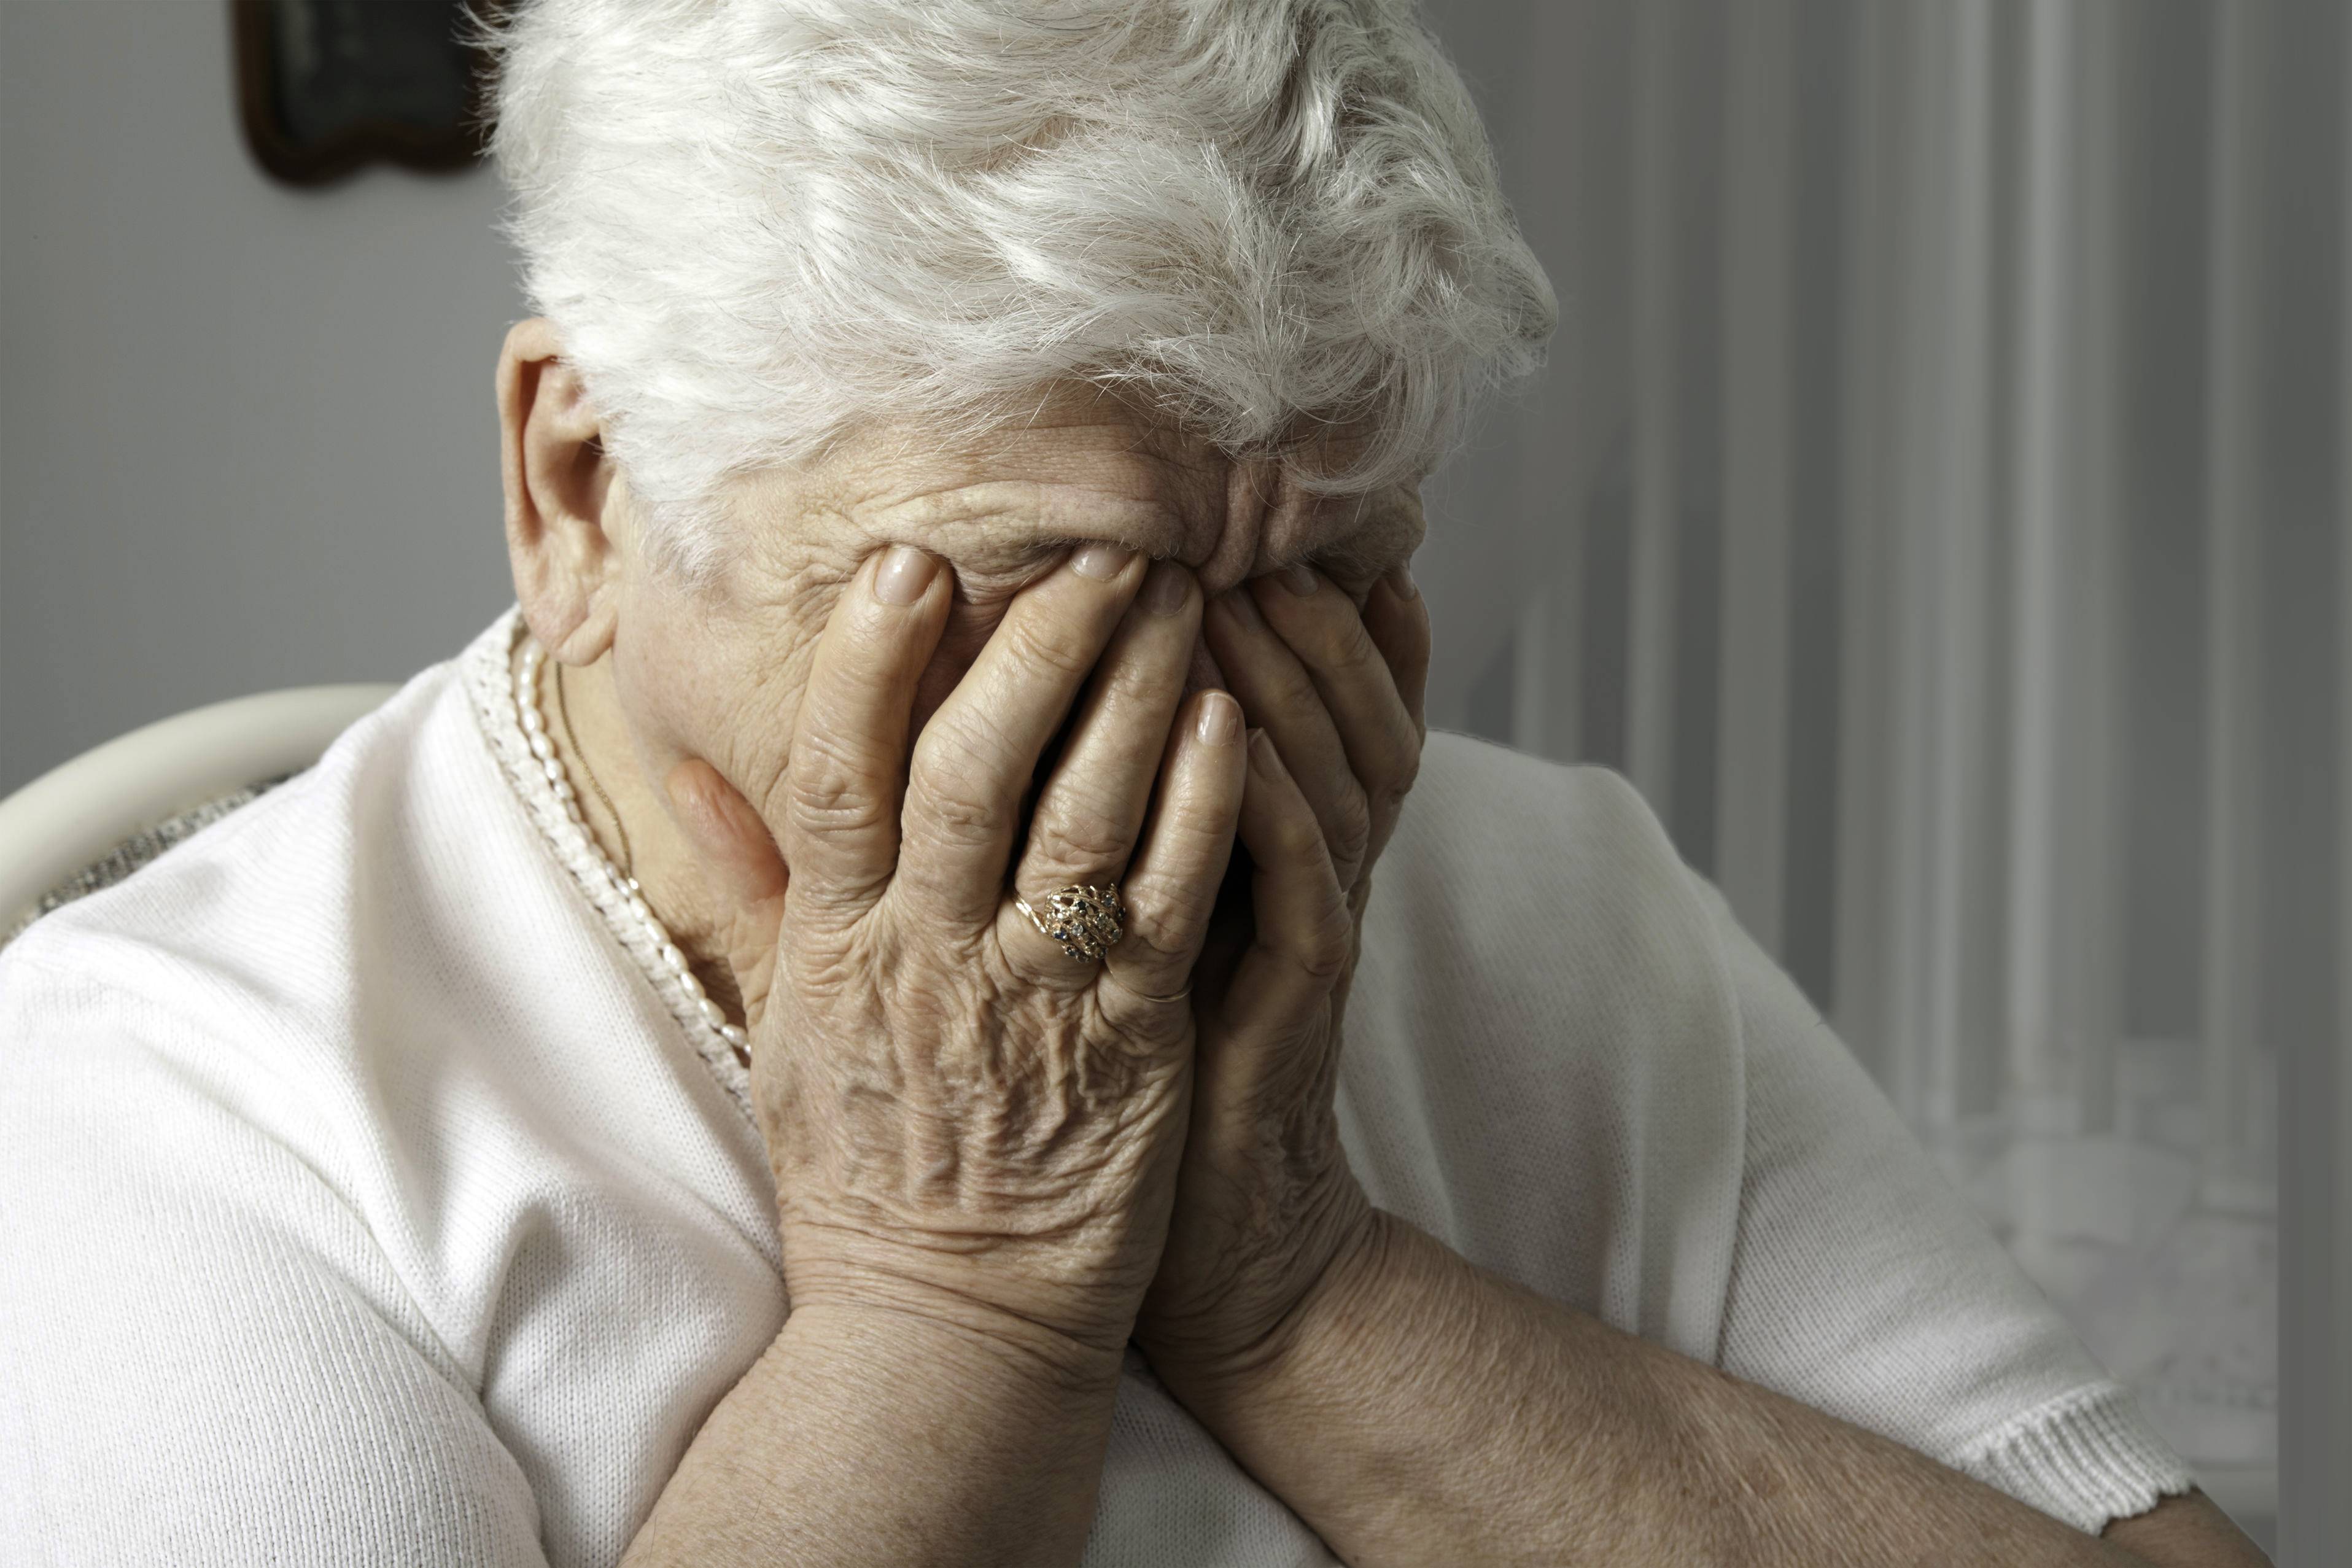 Психосоциальная проблема лиц пожилого и старческого возраста